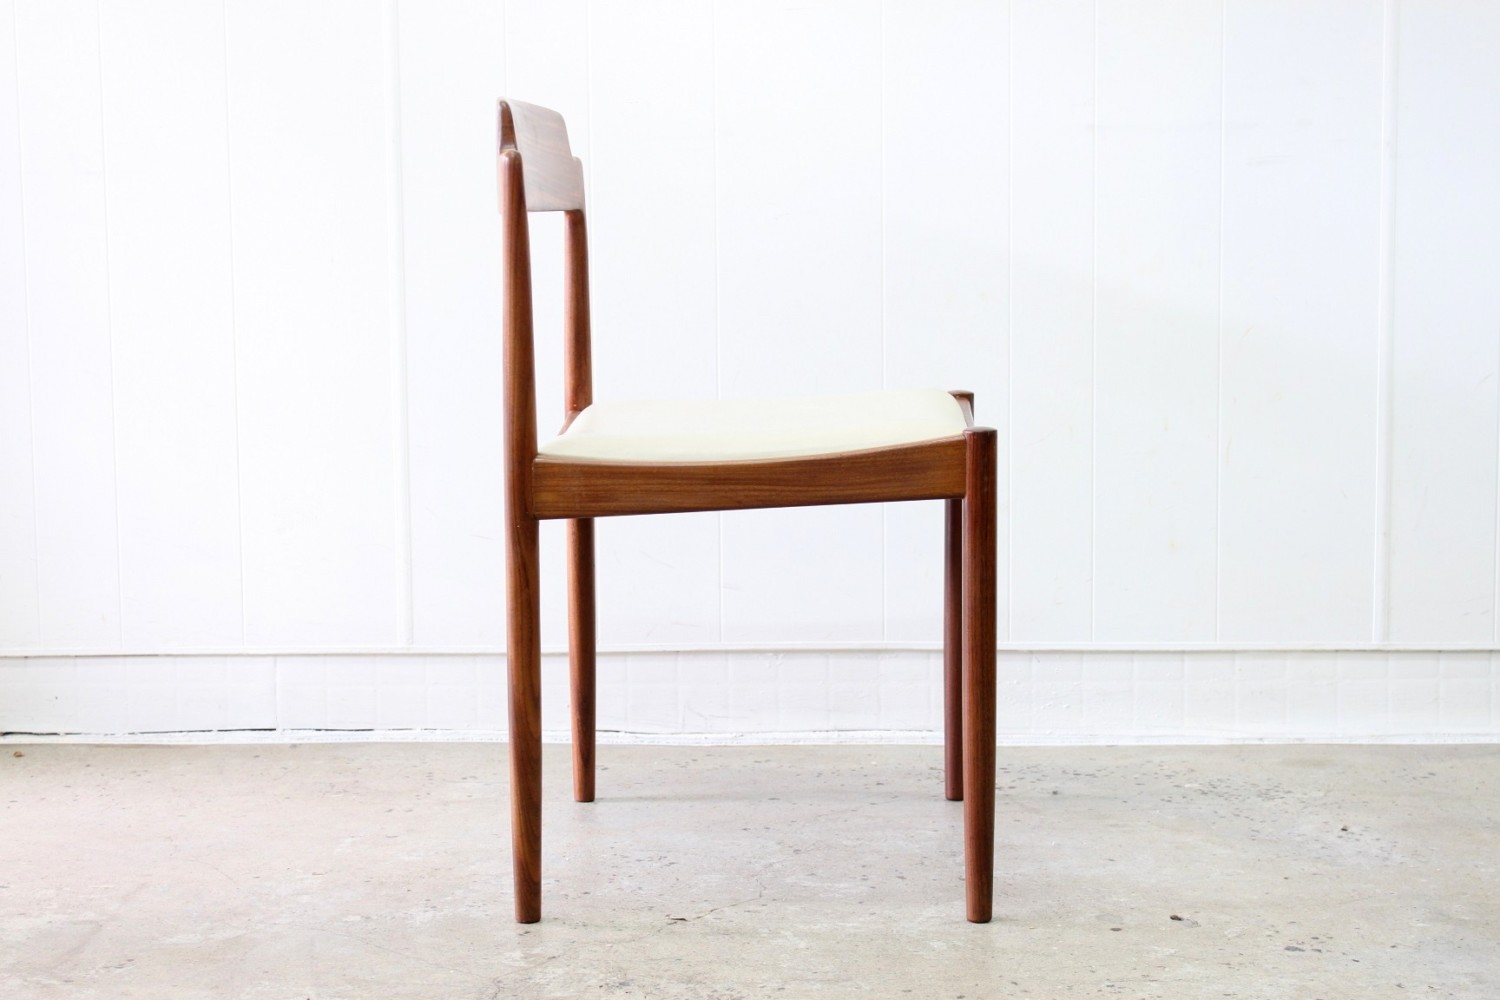 Kofod Larsen Dining Chairs